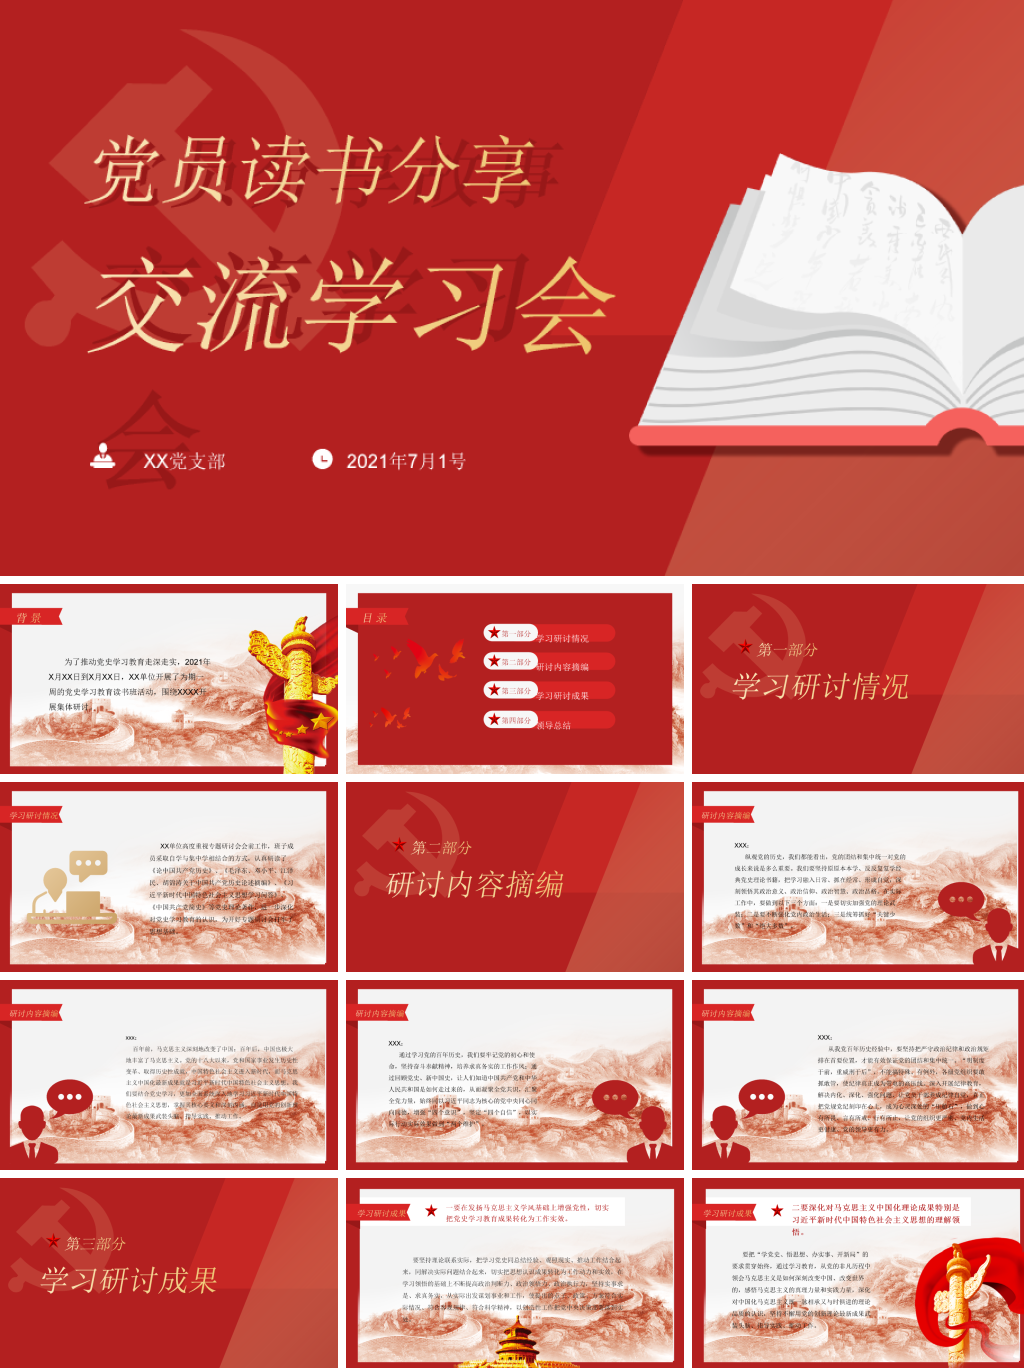 中国红党员读书分享学习交流会PPT